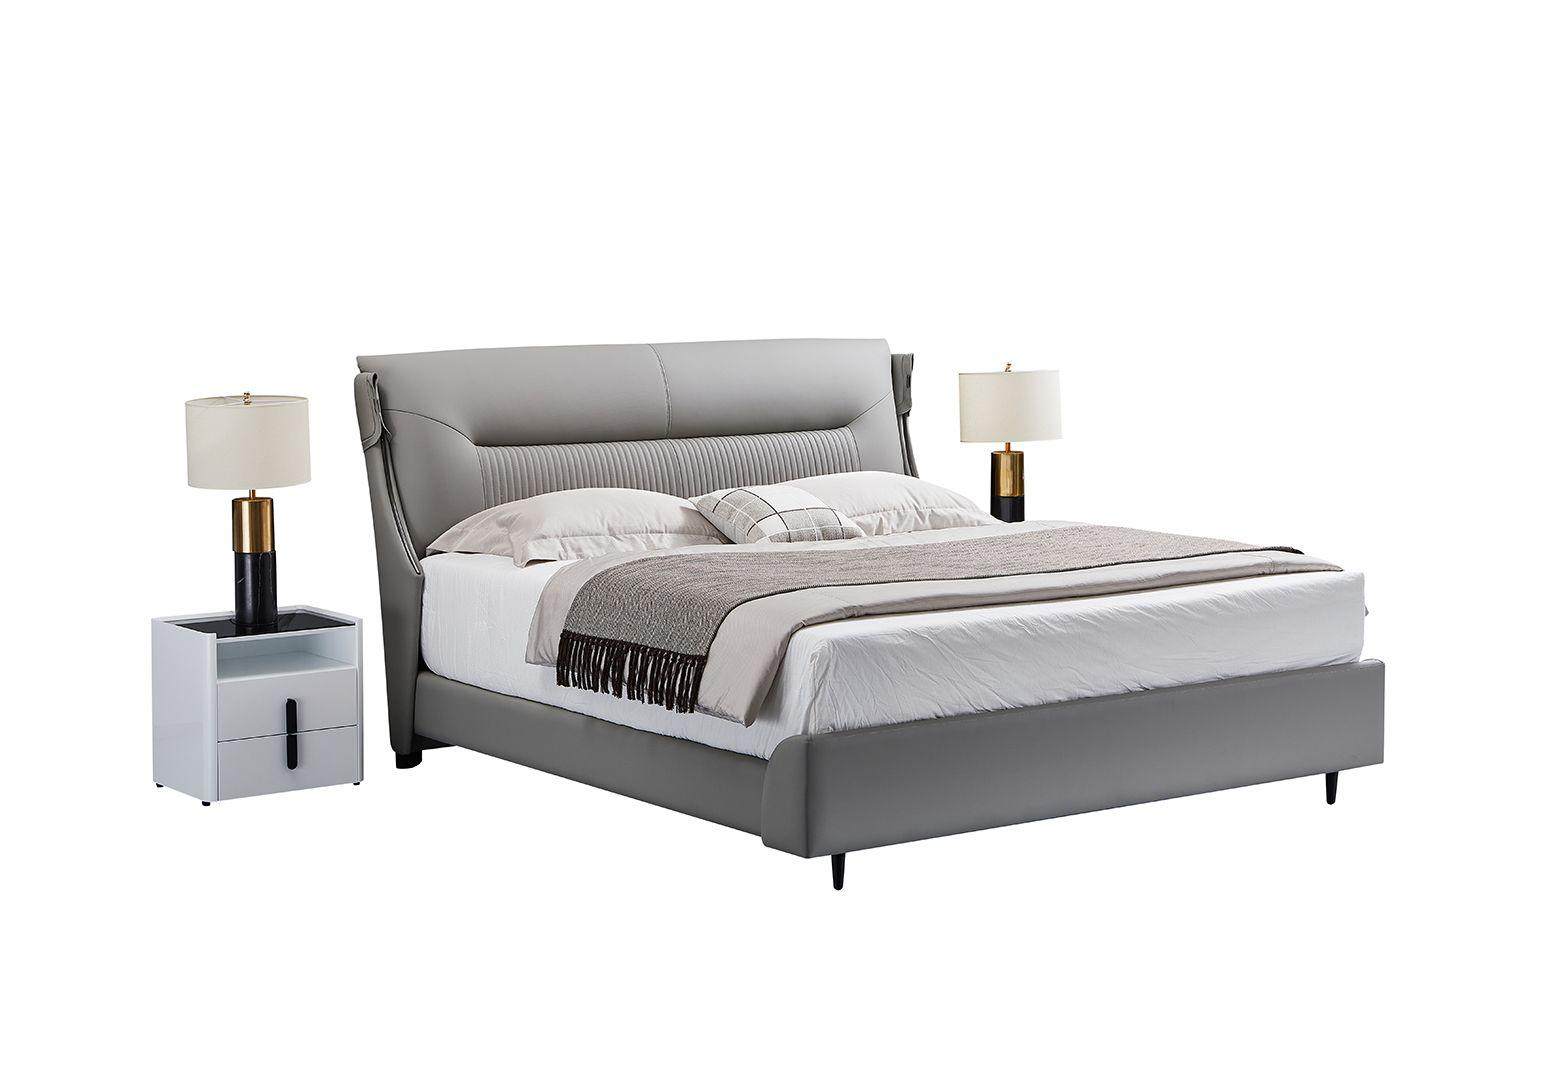 Contemporary, Modern Platform Bedroom Set B-Y2001-CK / NS-Y2001 NS-Y2001 B-Y2001-CK-3PC in Gray Genuine Leather